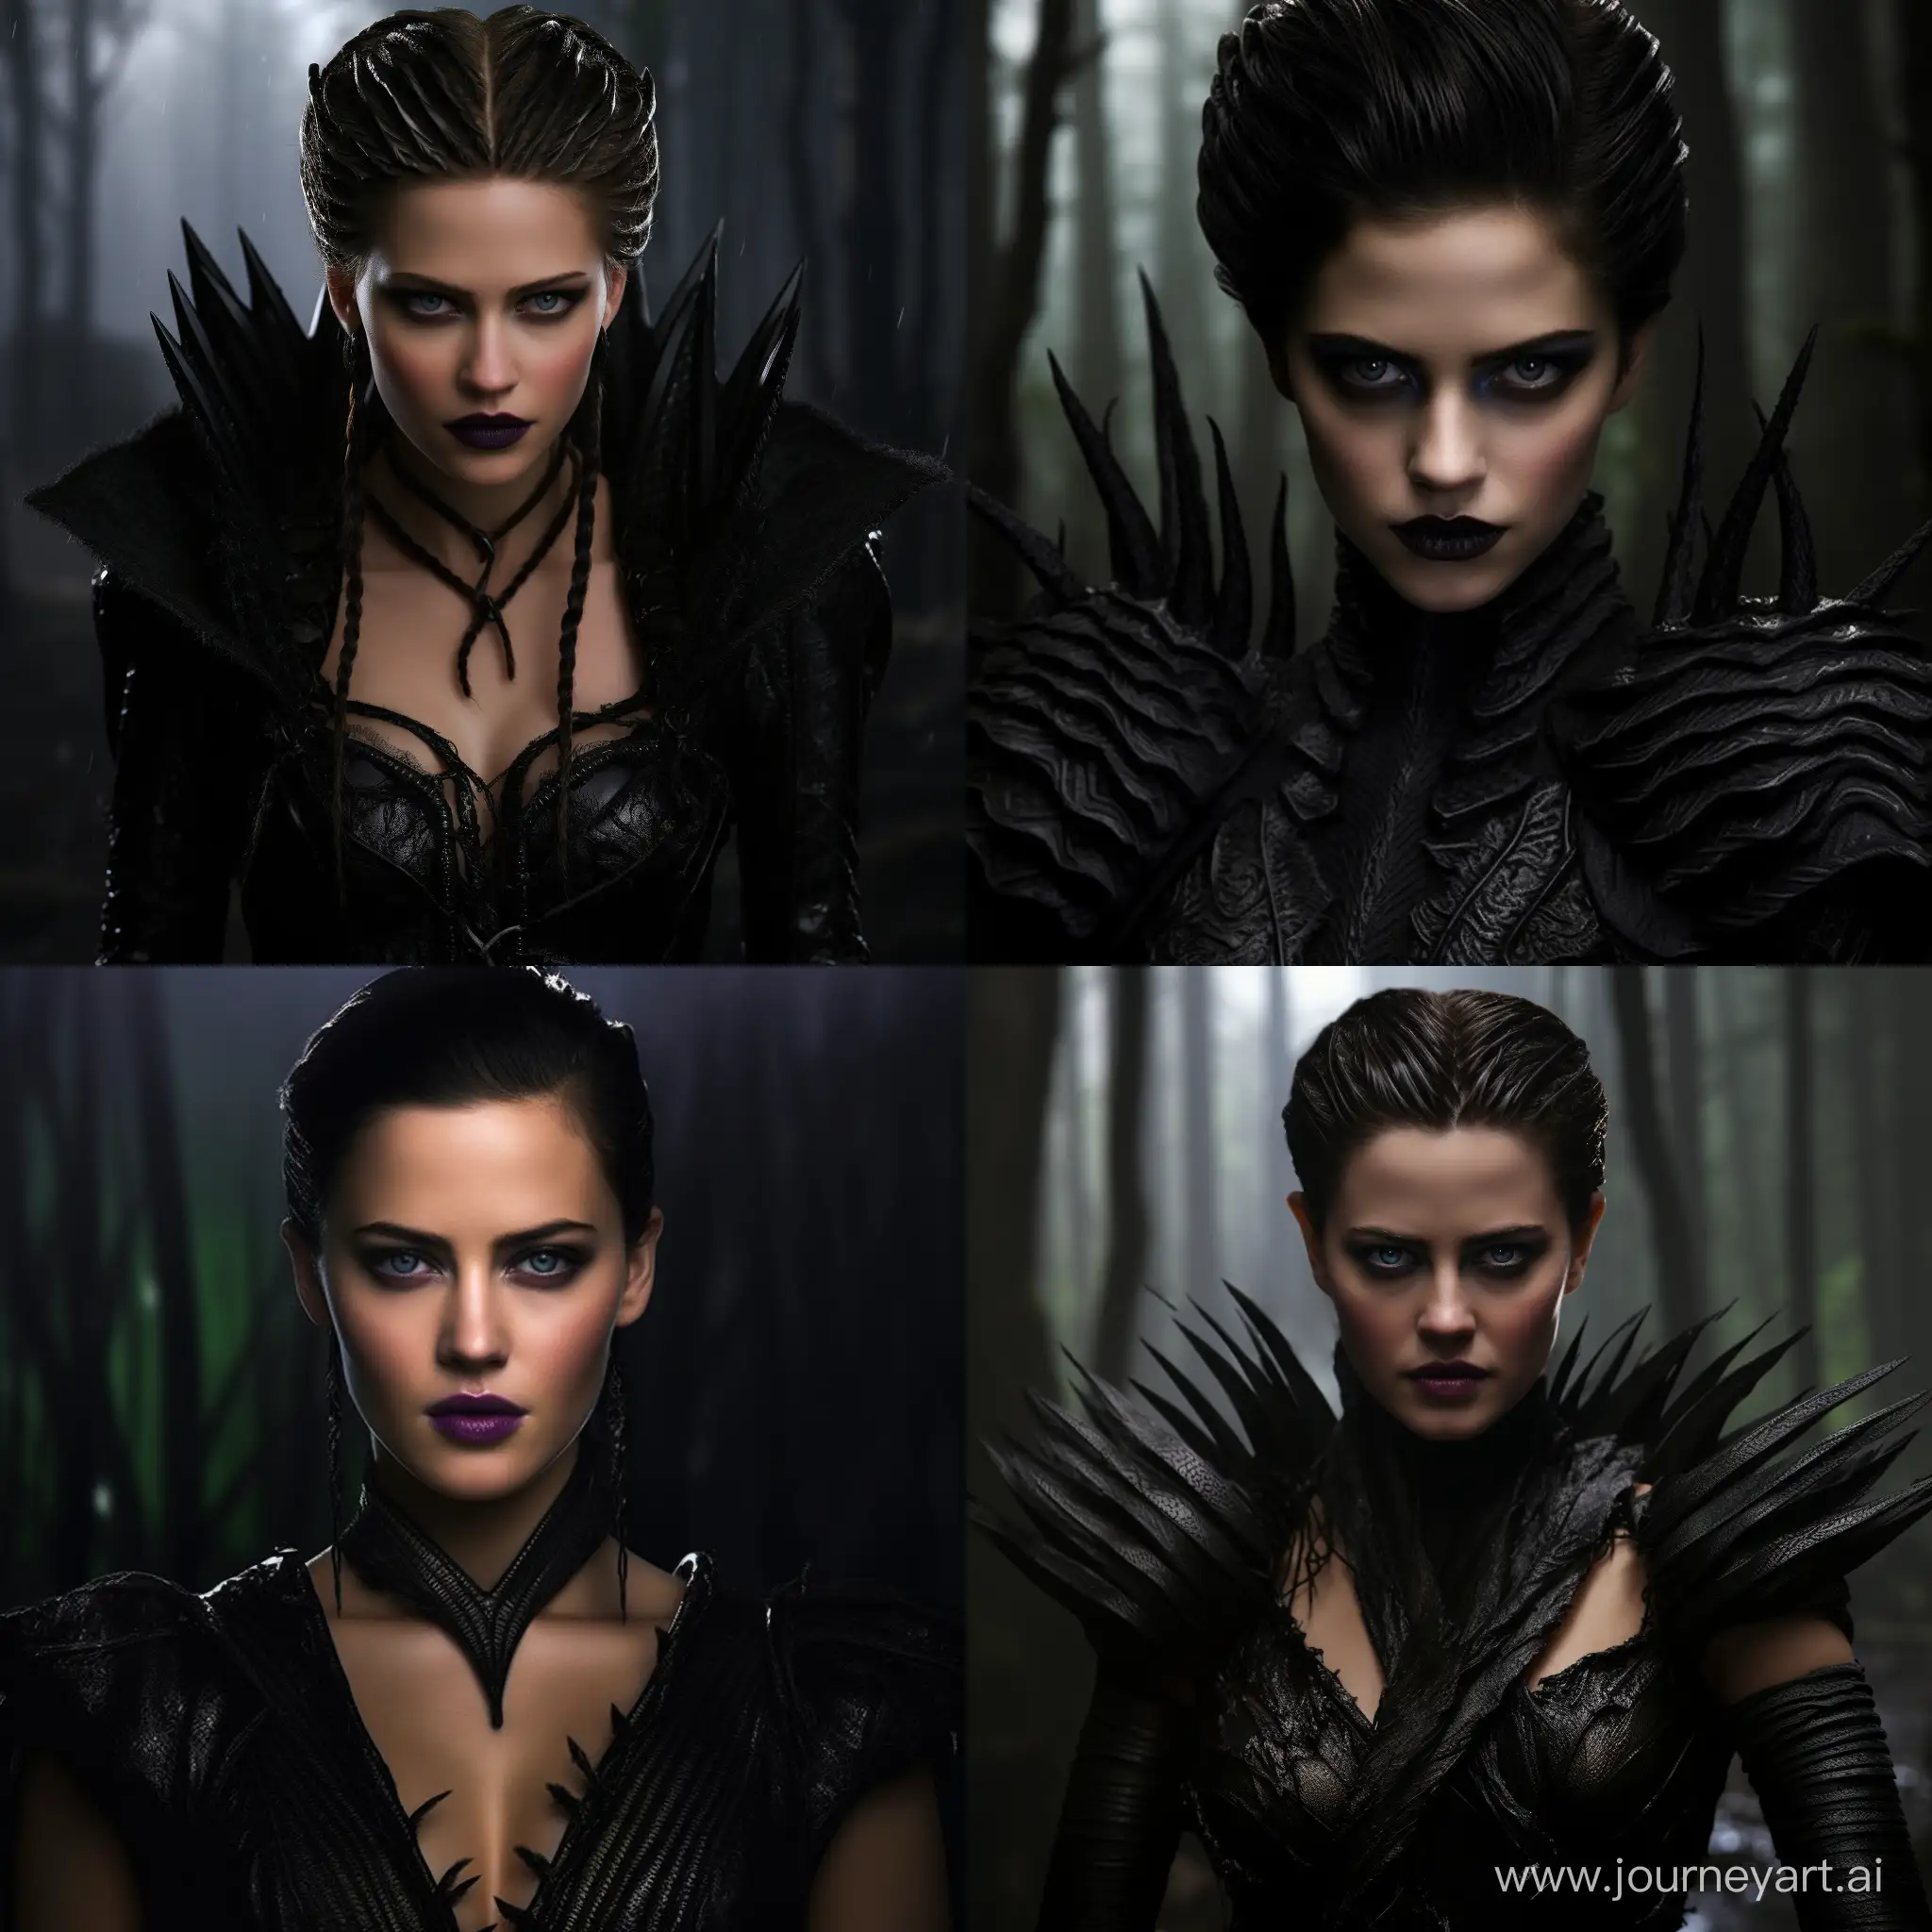 Kristen-Stewart-Portrays-Maleficent-in-Stunning-Artwork